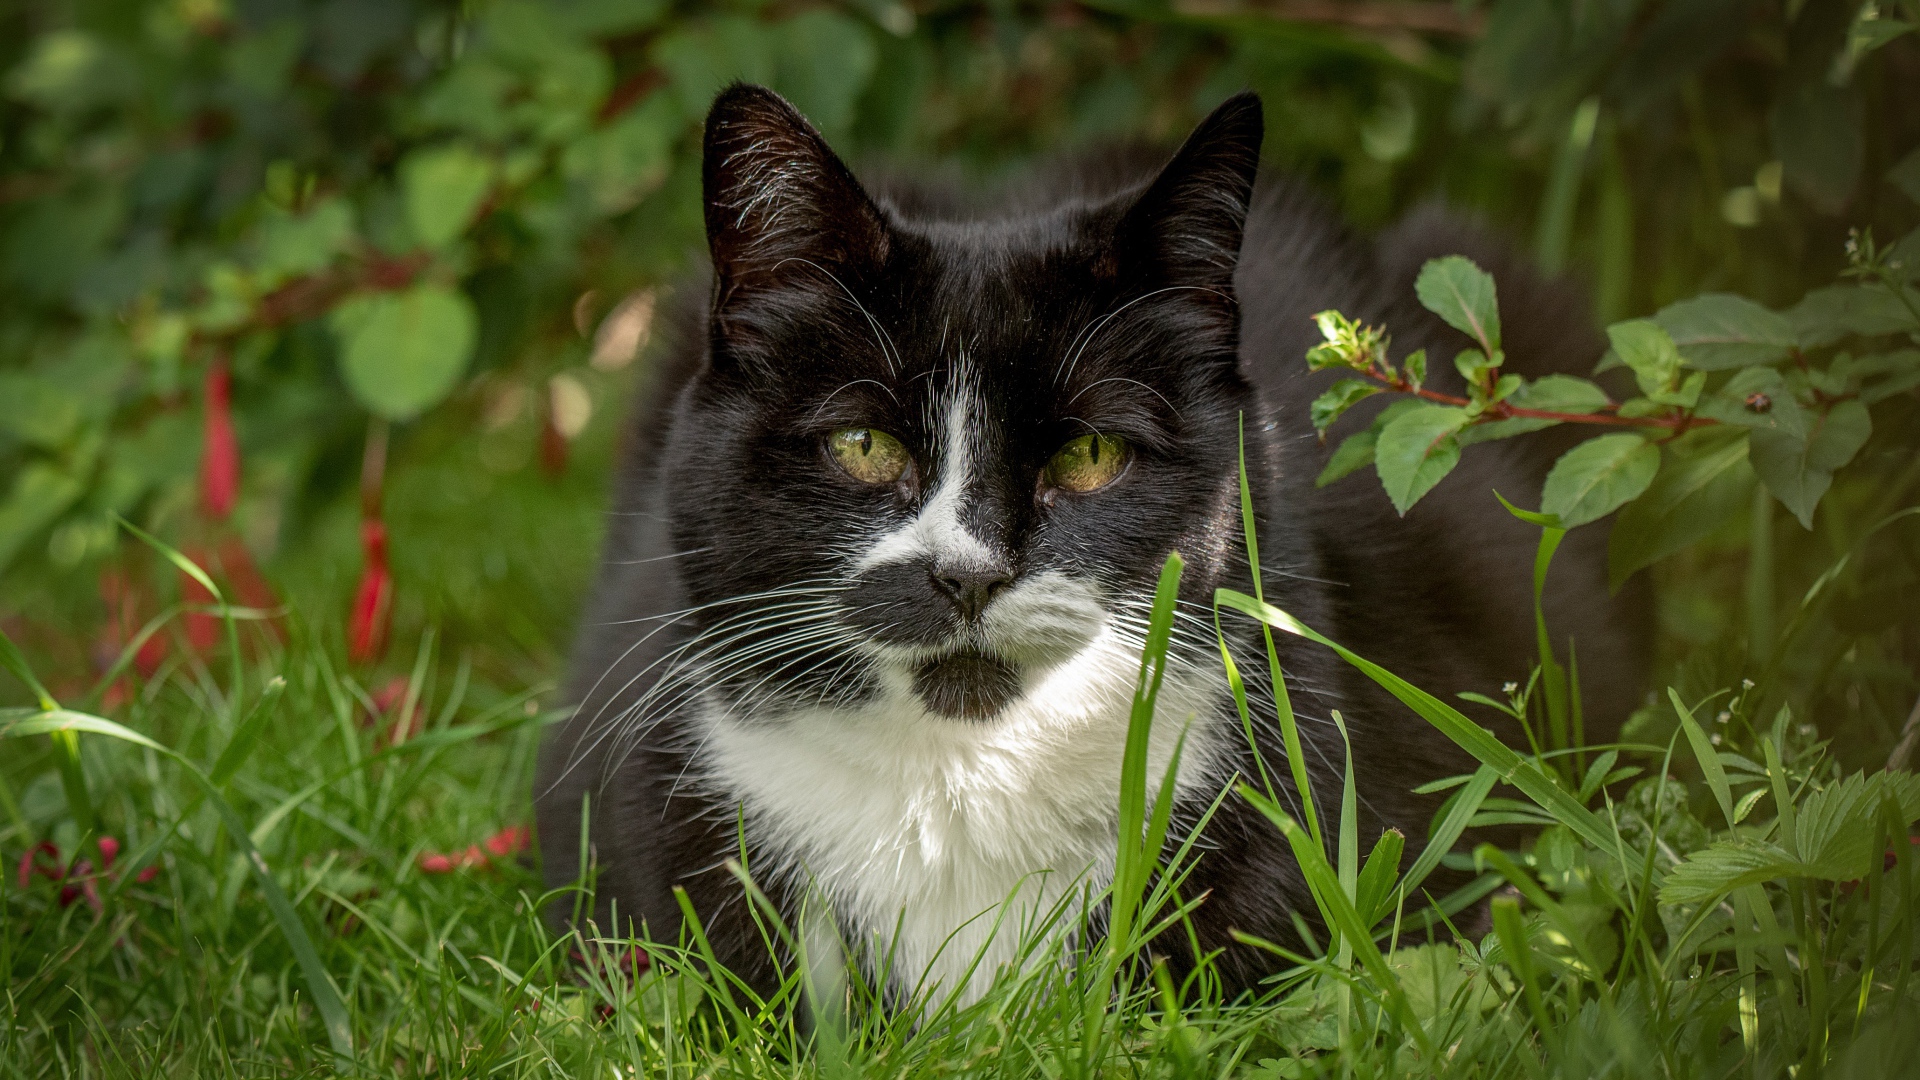 Черный с белым кот сидит в зеленой траве